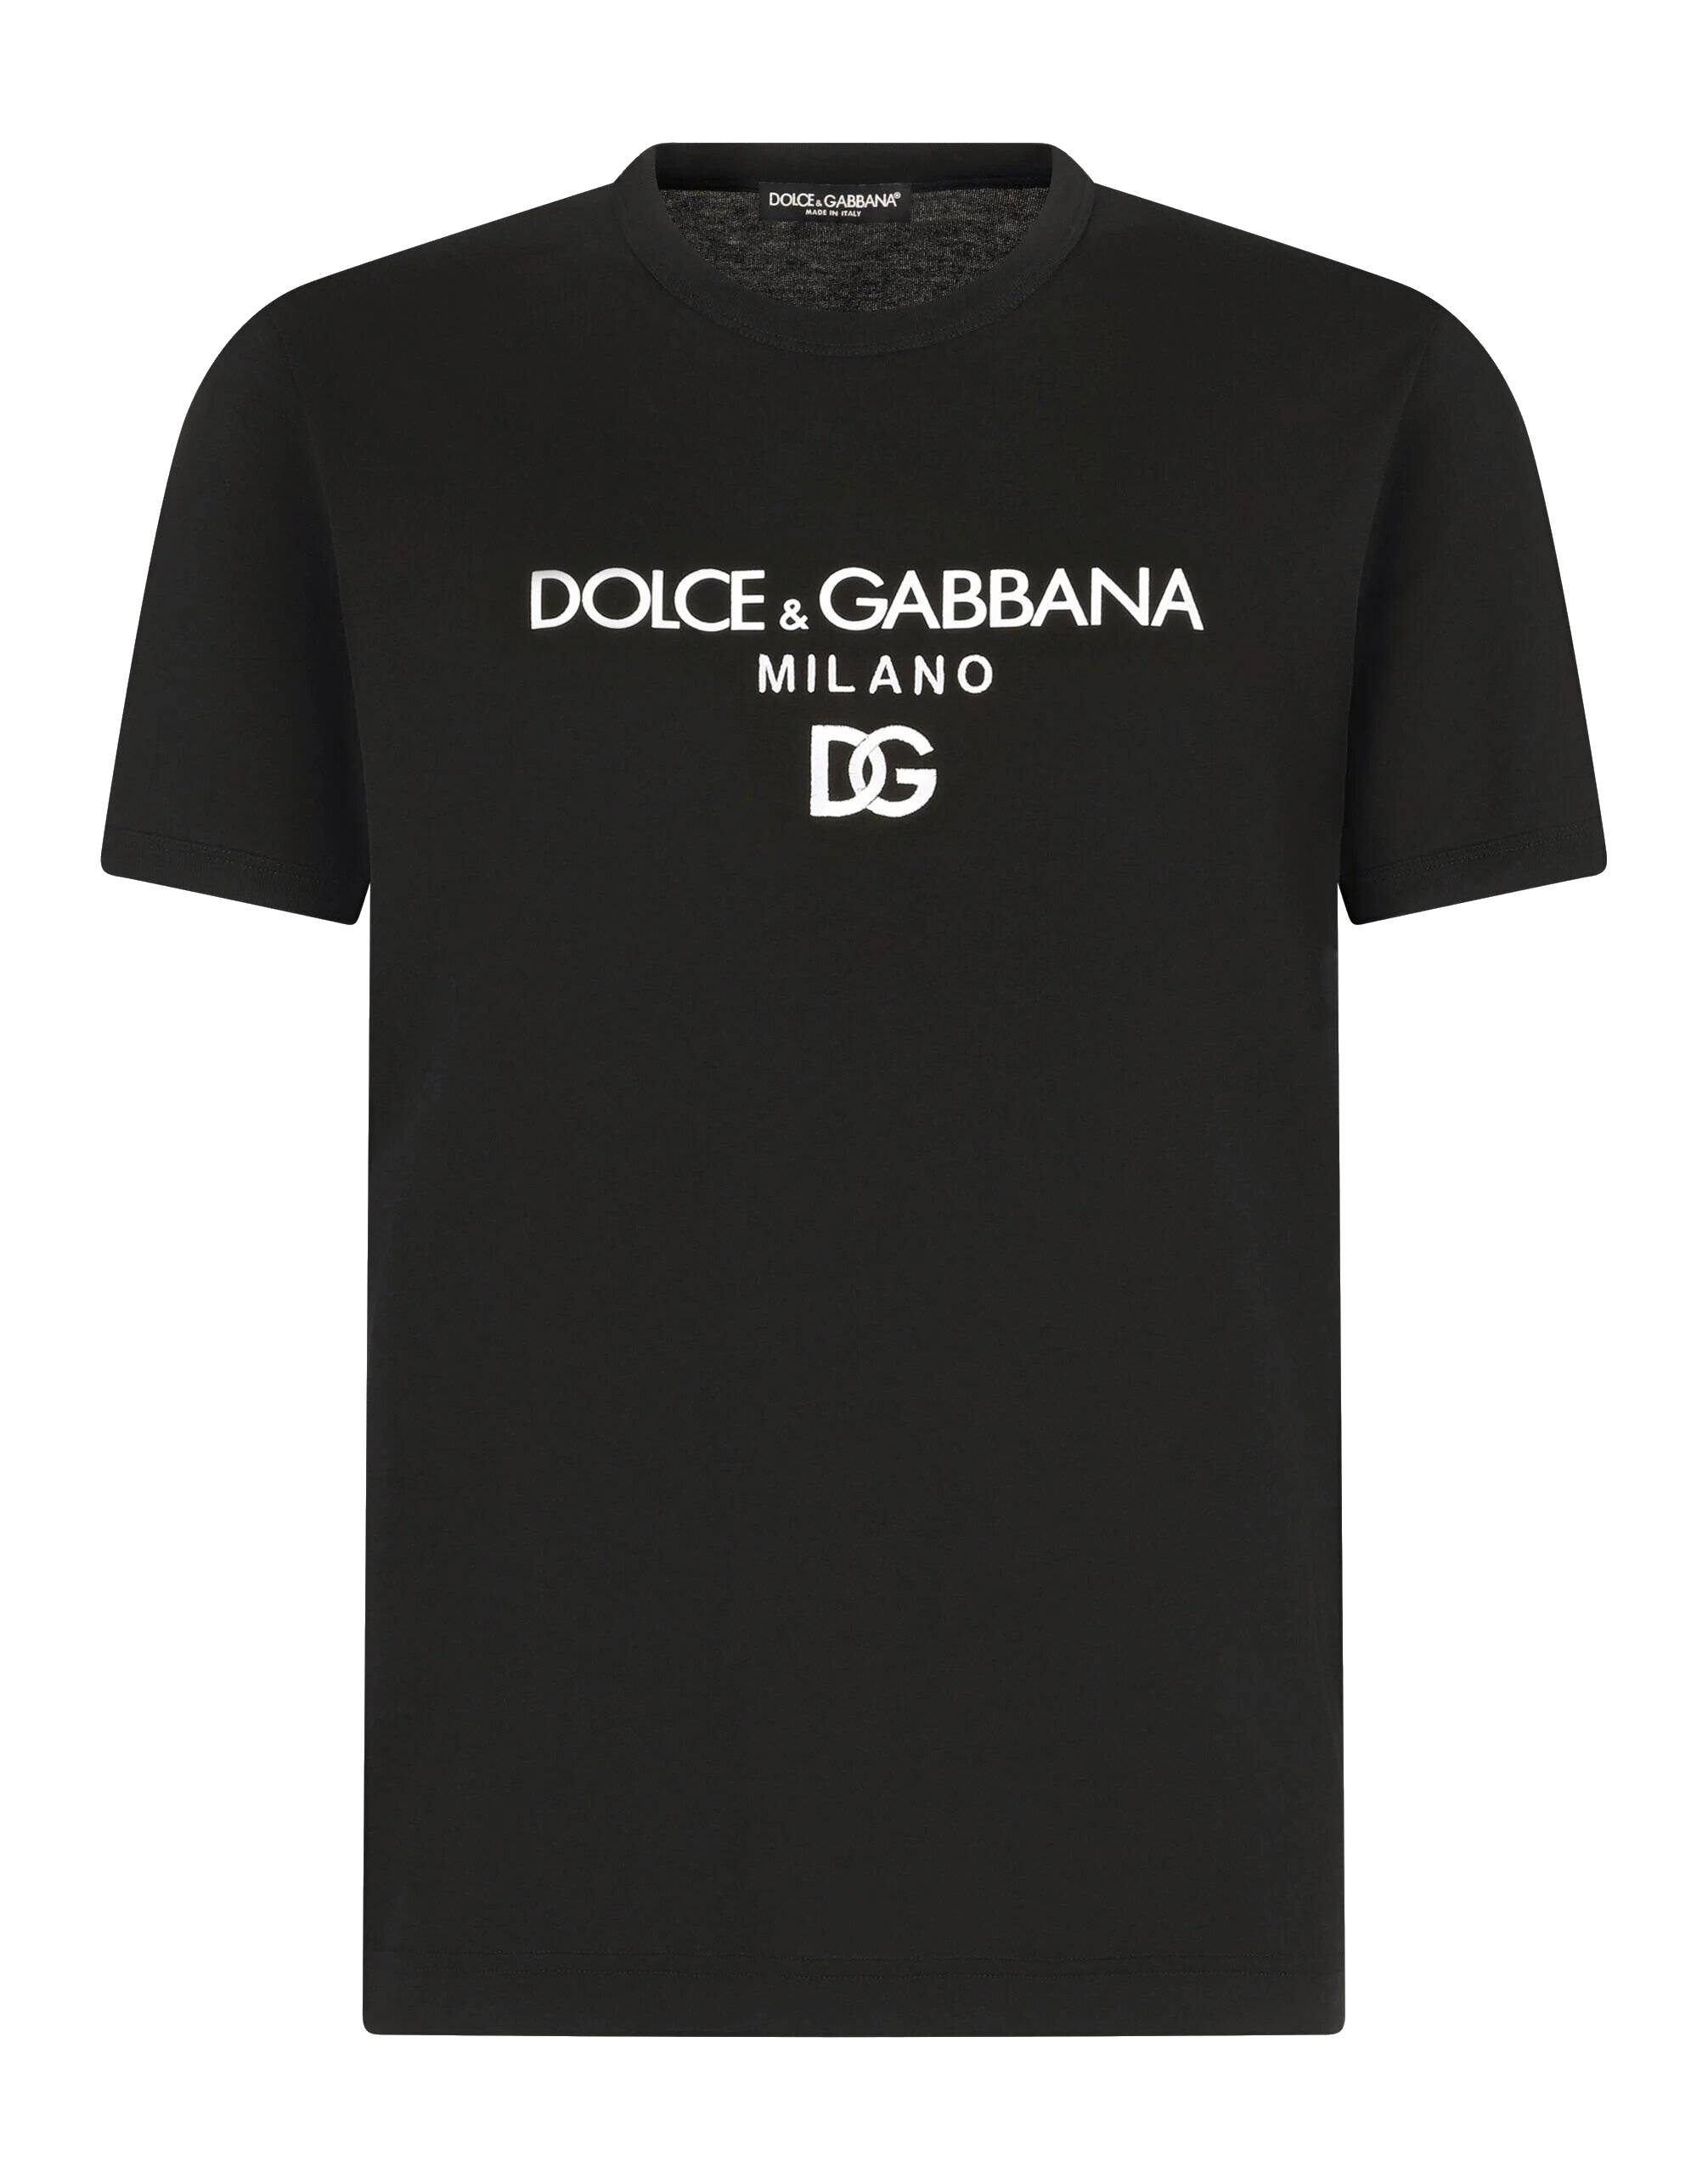 DOLCE GABBANA camiseta de hombre dolce&gabbana logo estampado